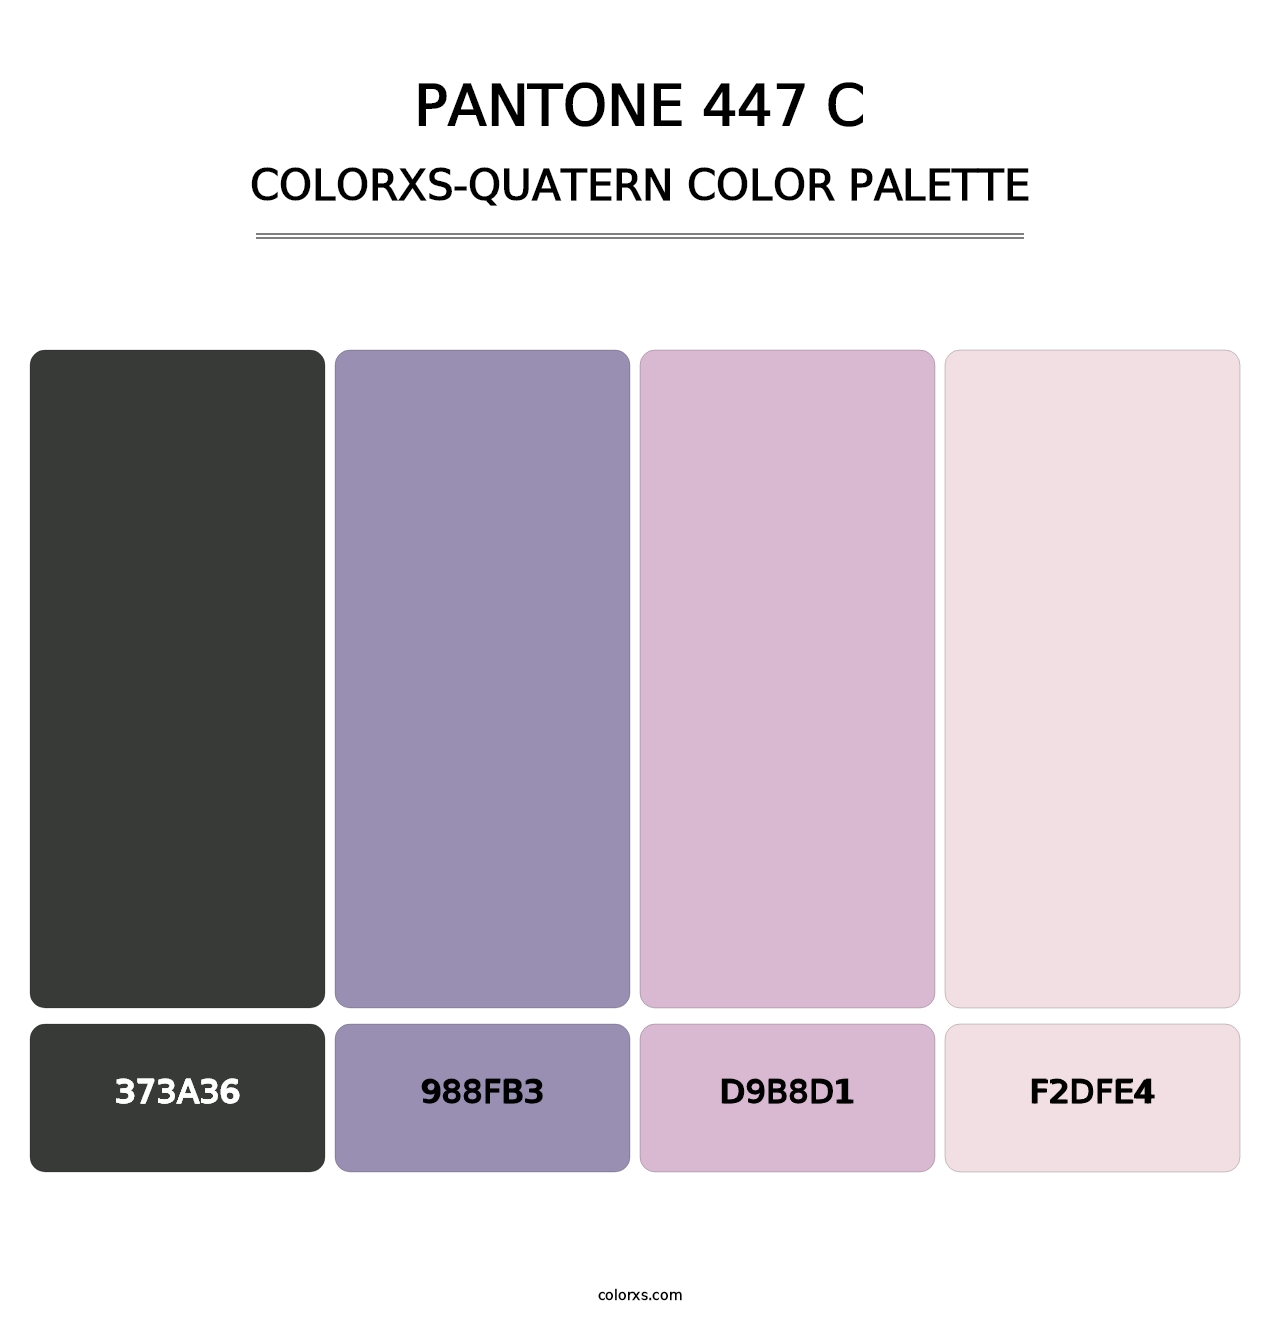 PANTONE 447 C - Colorxs Quatern Palette